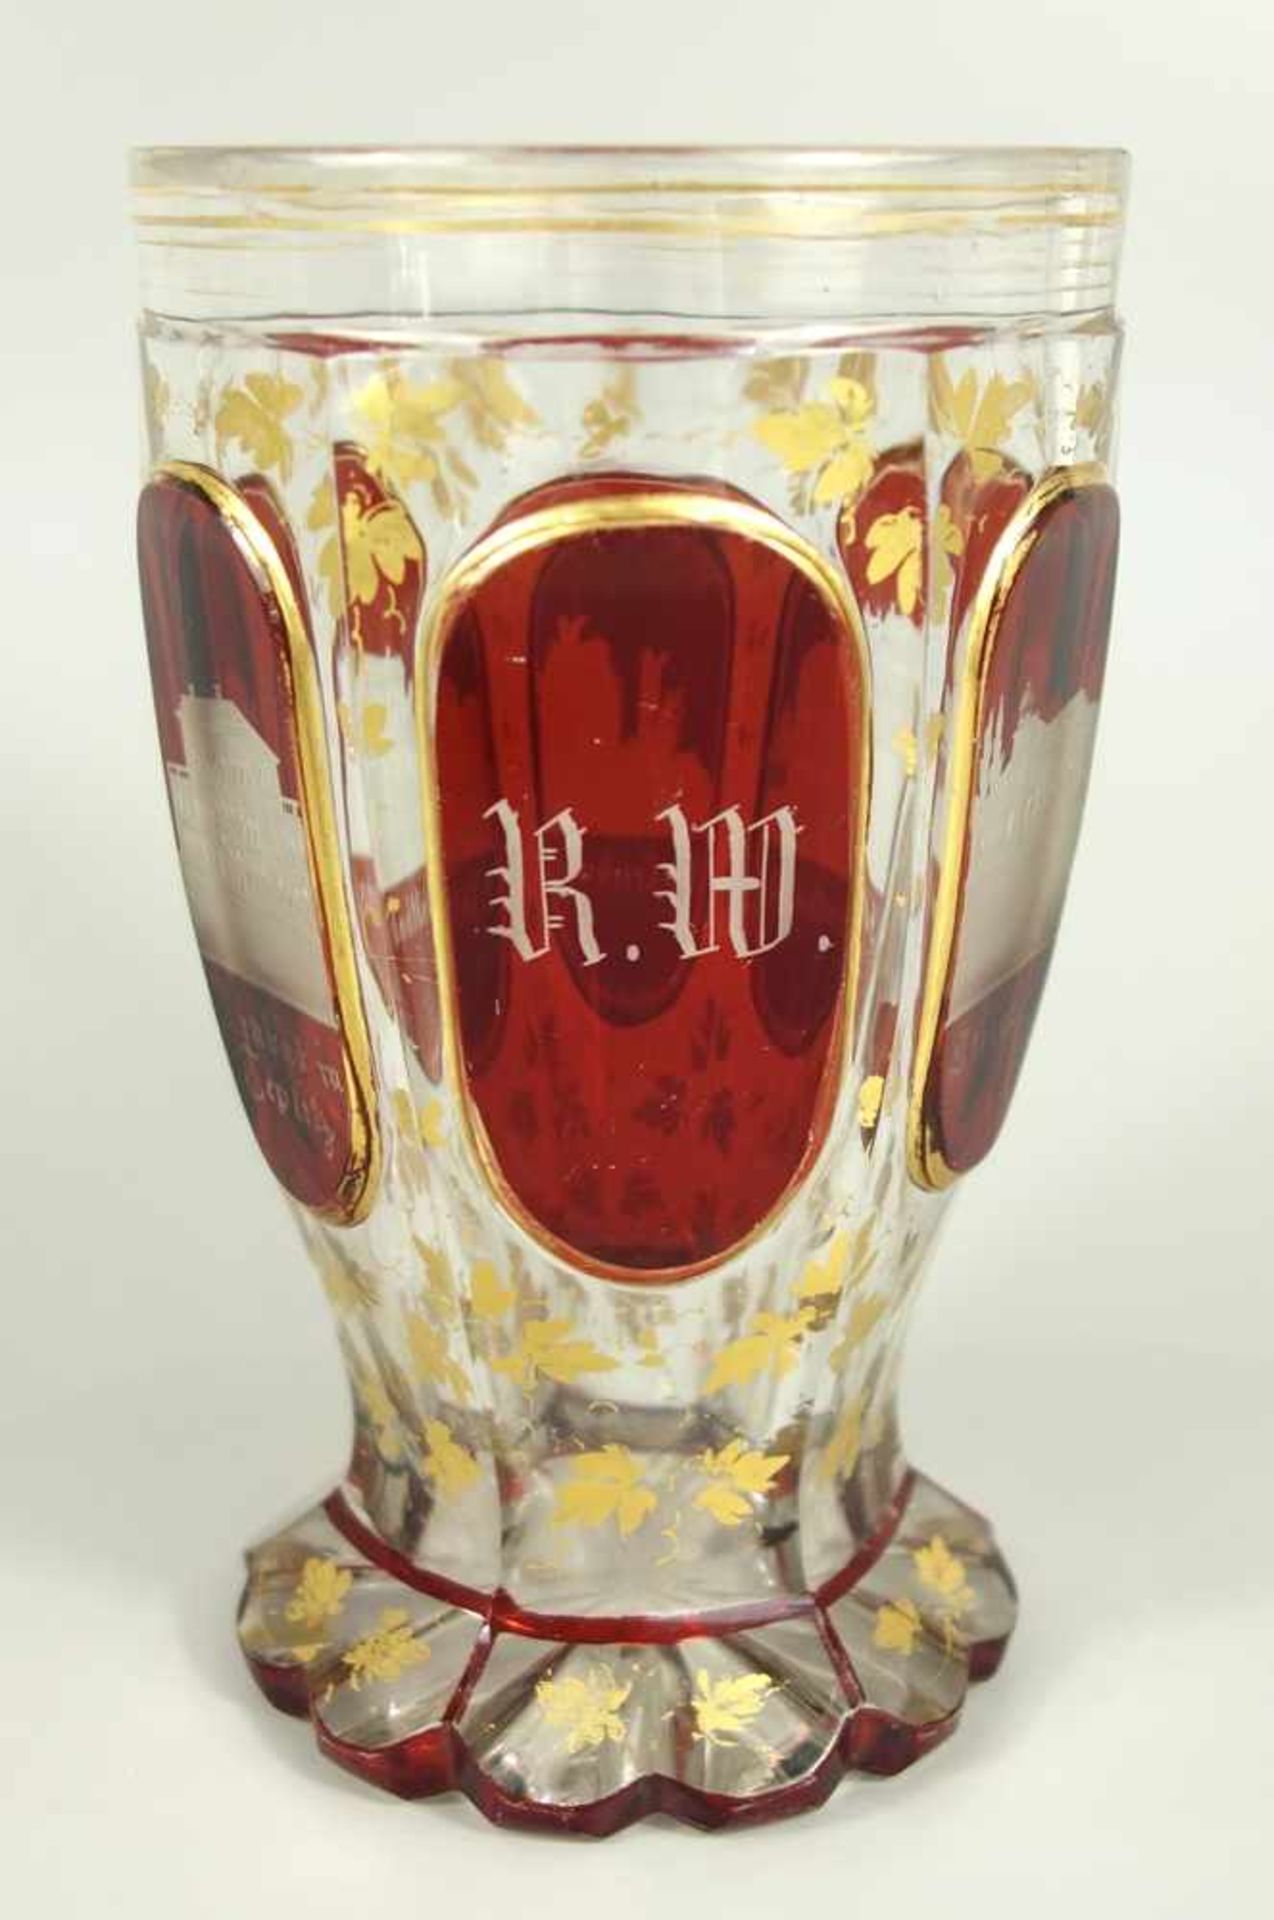 Bäderbecher "Teplitz", Böhmen um 1850, Kristallglas mit Rubinätze, Boden mit Kerbschliff, Wandung - Bild 4 aus 4